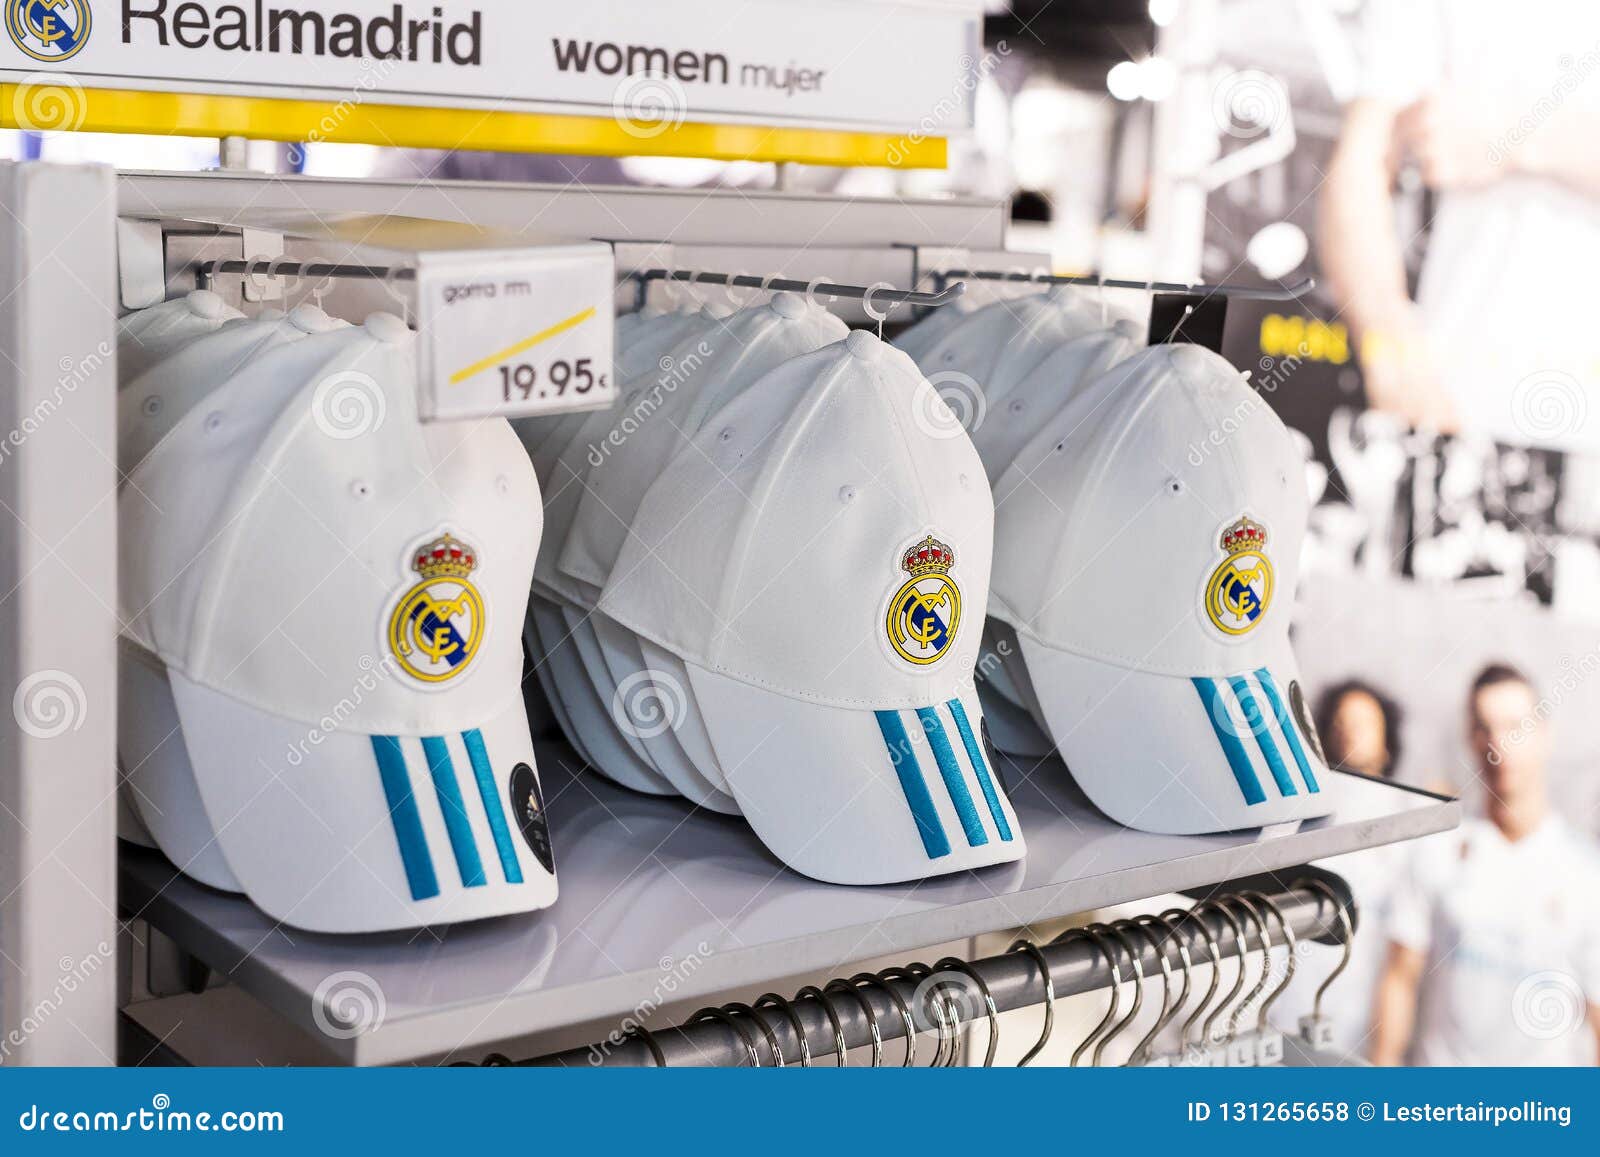 La Tienda De Ropa Oficial Y Se Divierte Las Cualidades Para El Club Del Fútbol Del Real Madrid De Las Fans Foto de archivo editorial - Imagen de comercio, regalo: 131265658